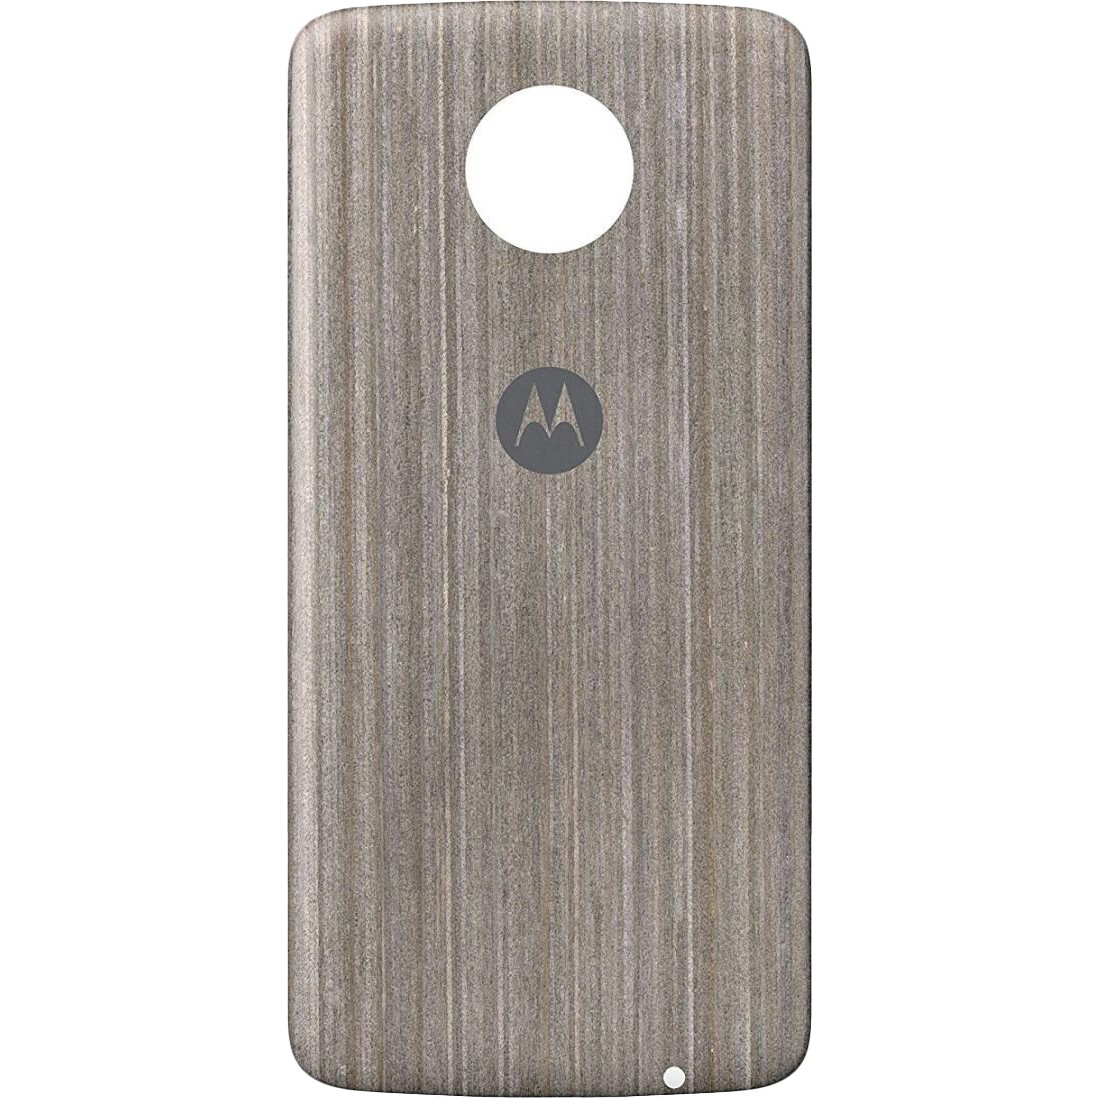 Motorola Style Shell Moto Mod for Moto Z Silver Oak Wood (ASMCAPSLOKEU) - зображення 1